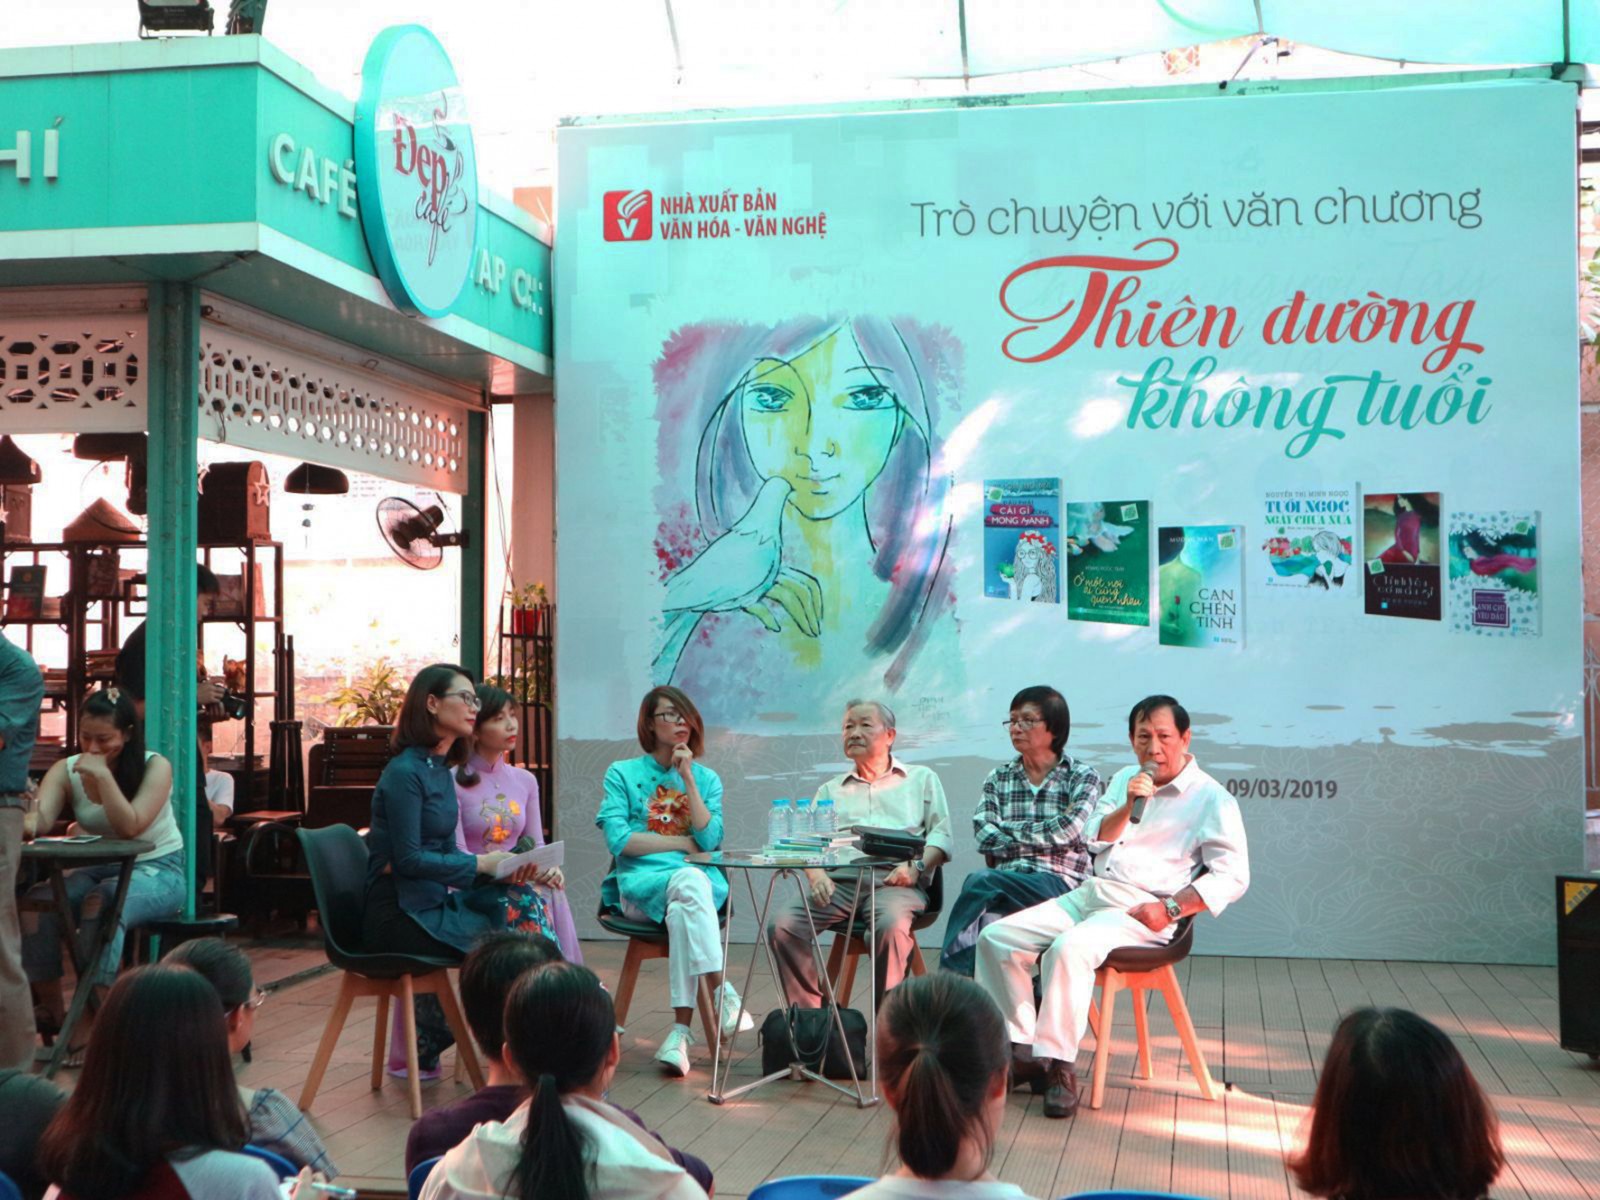 Quang cảnh buổi giao lưu ra mắt tủ sách “Thiên đường không tuổi” vừa diễn ra tại TP Hồ Chí Minh. Ảnh: QUỲNH MY